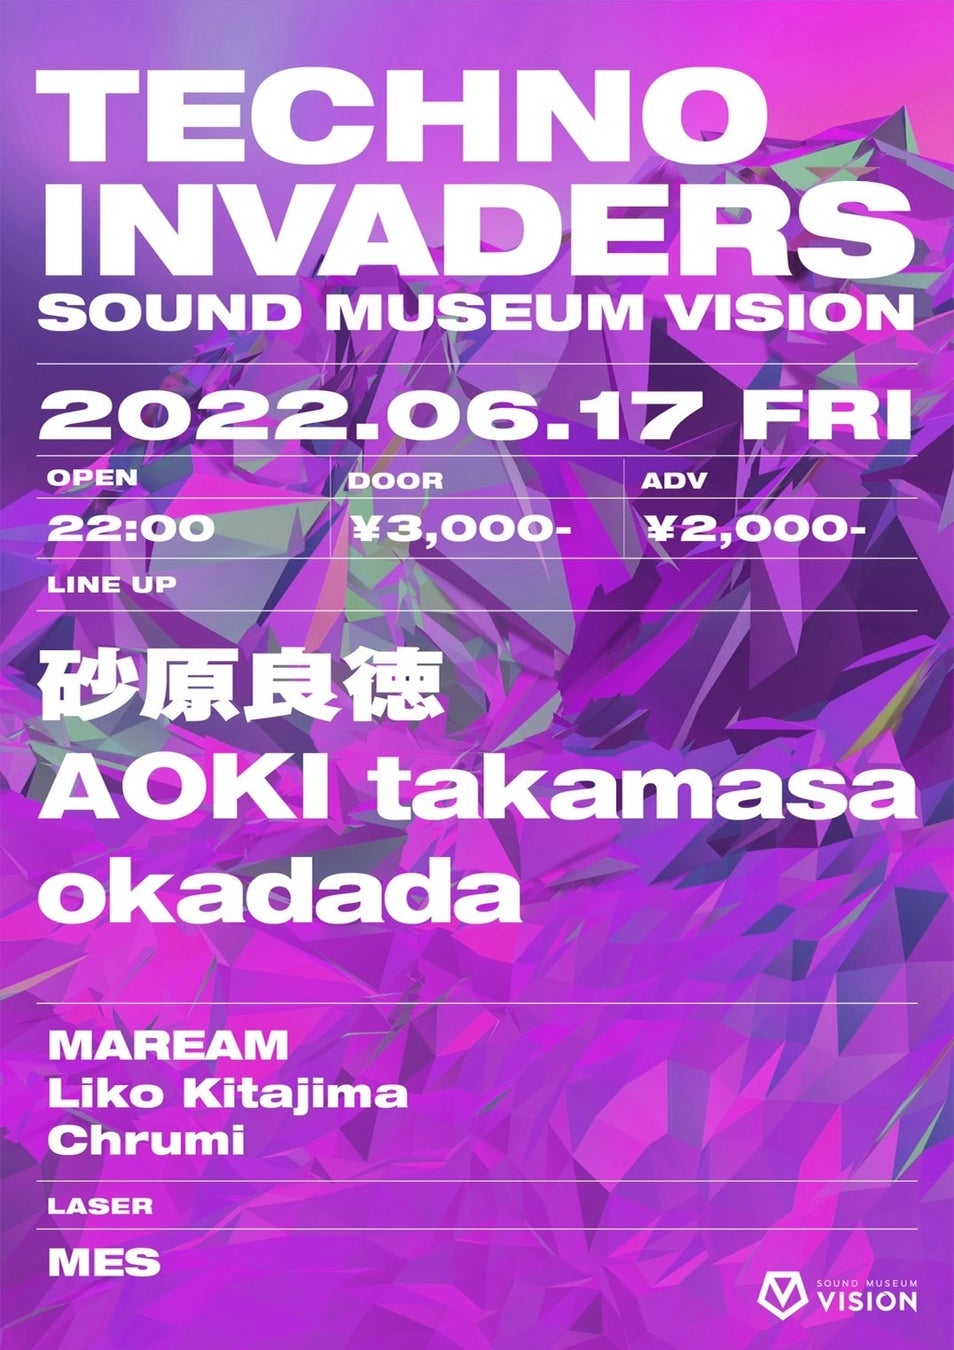 今回のTECHNO INVADERSは、昨年のFUJI ROCKで素晴らしいライブが絶賛だった砂原良徳やNeutralでの活動も進行中のAOKI takamasaや人気DJ、okadadaが登場！